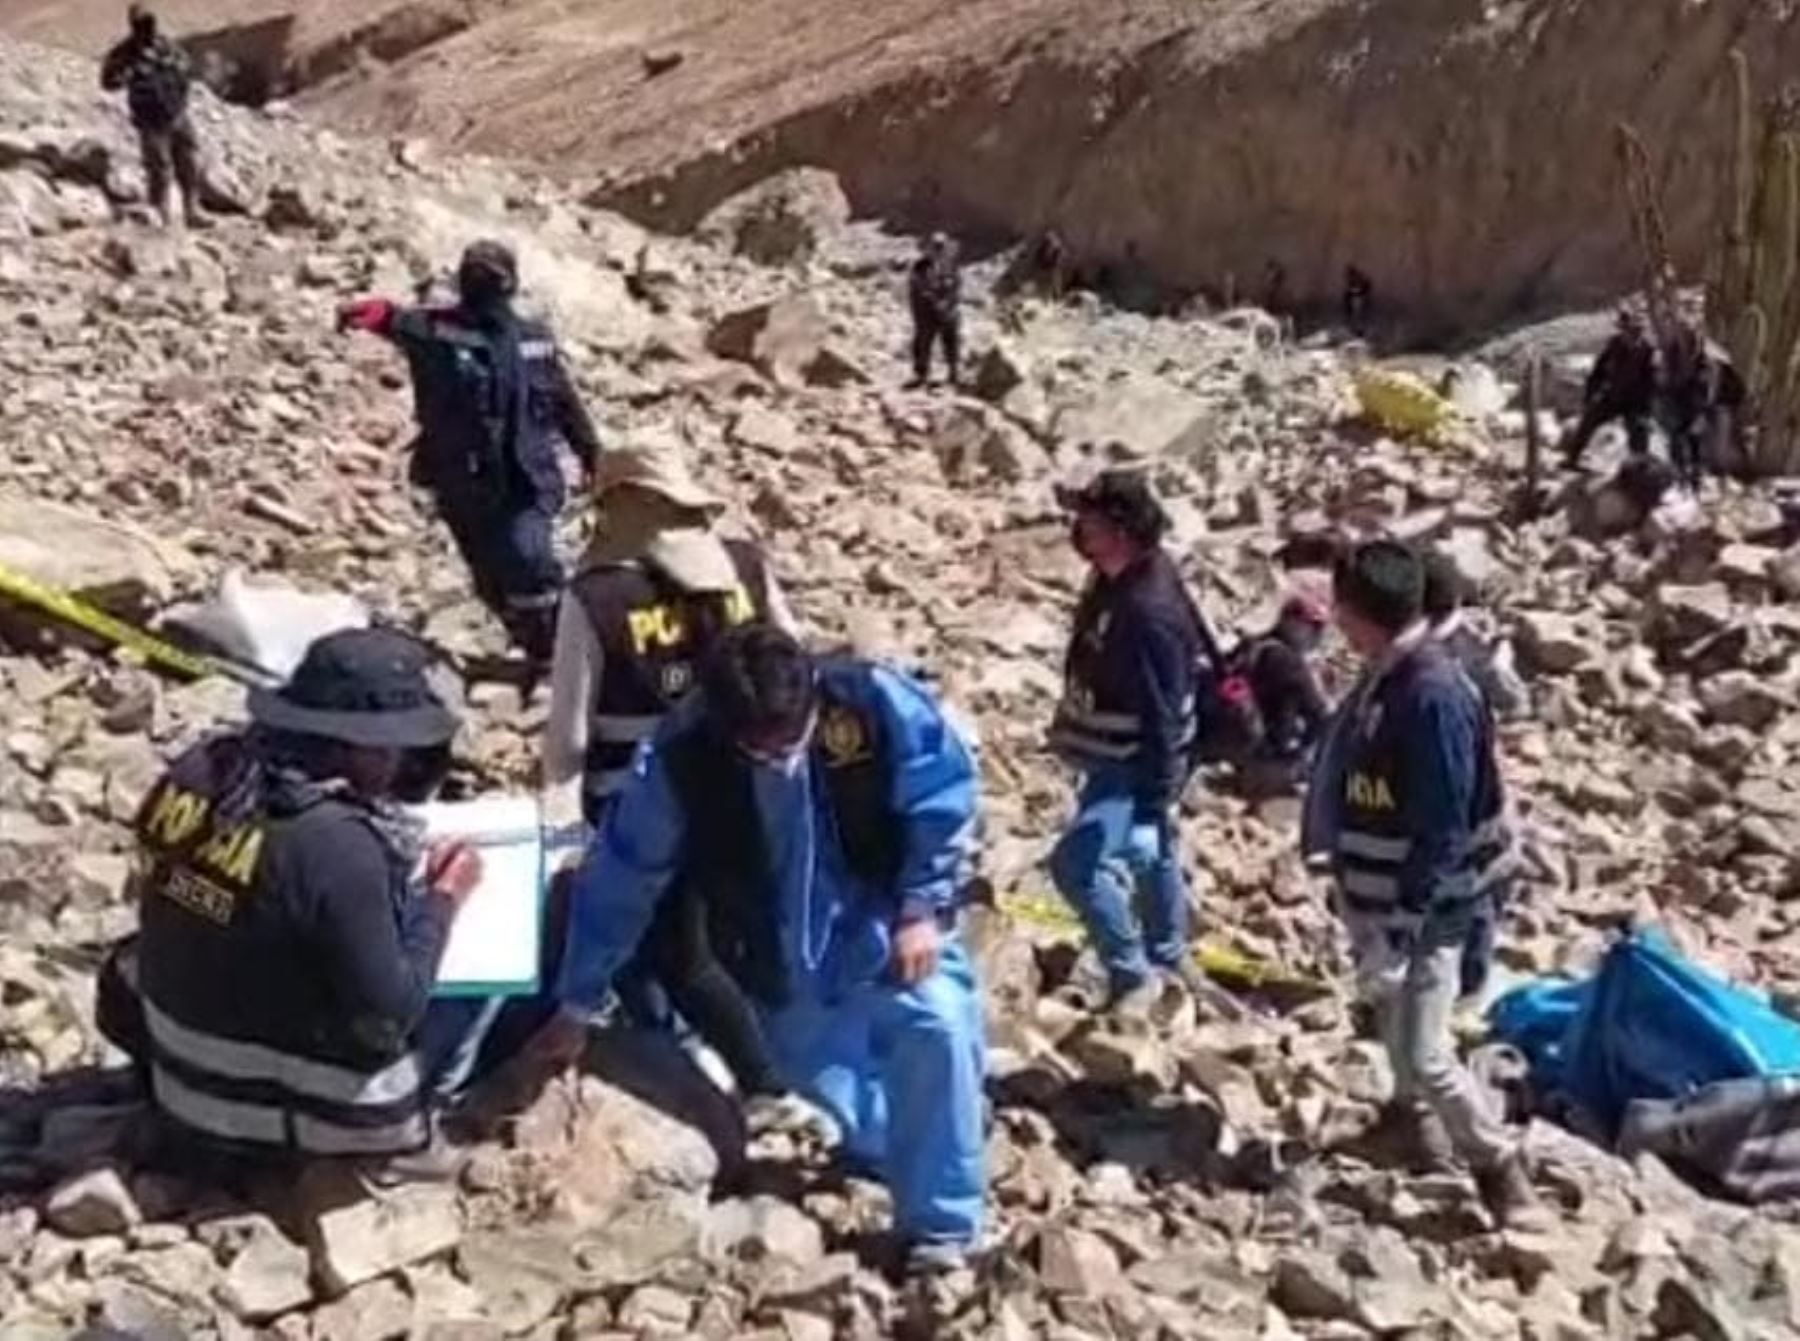 El Gobierno declaró el estado de emergencia a Caravelí y Atico donde murieron 14 personas por conflicto minero. ANDINA/Difusión